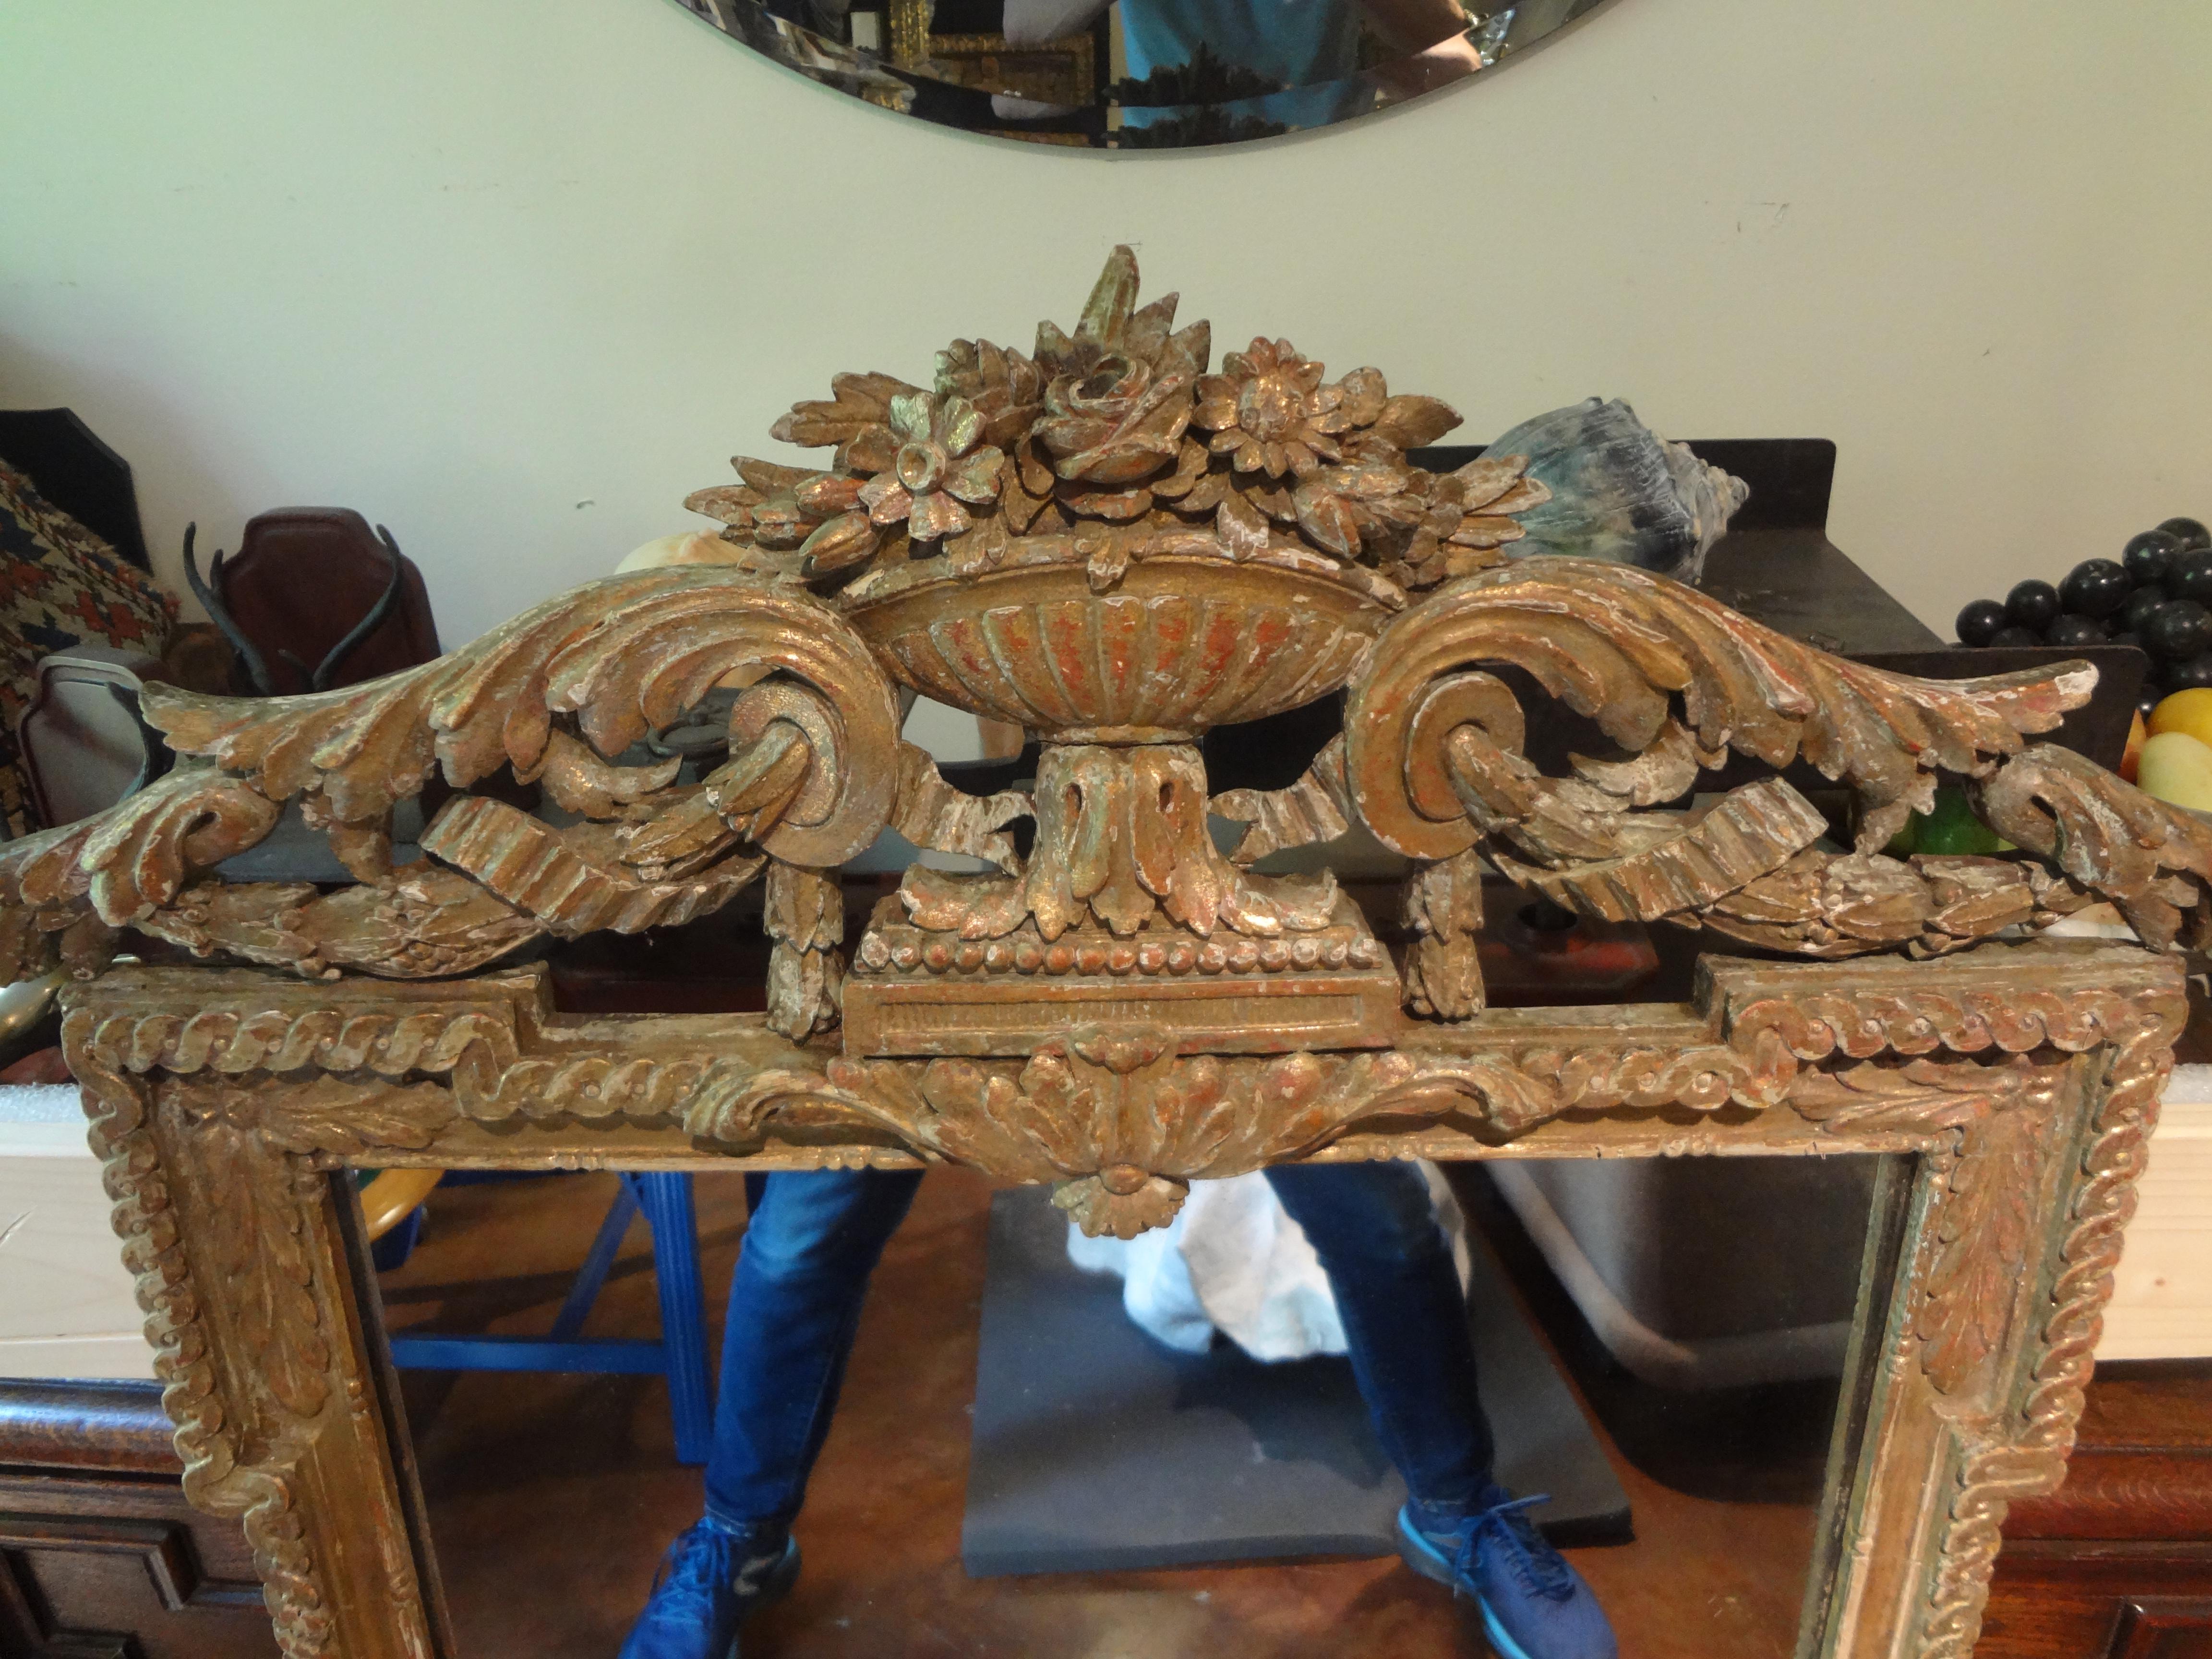 Miroir en bois doré de la Régence française du XVIIIe siècle.
Notre miroir en bois doré de style Régence française du XVIIIe siècle est absolument magnifique.
Parfait au-dessus d'une table console, d'une crédence, d'une commode ou dans une salle